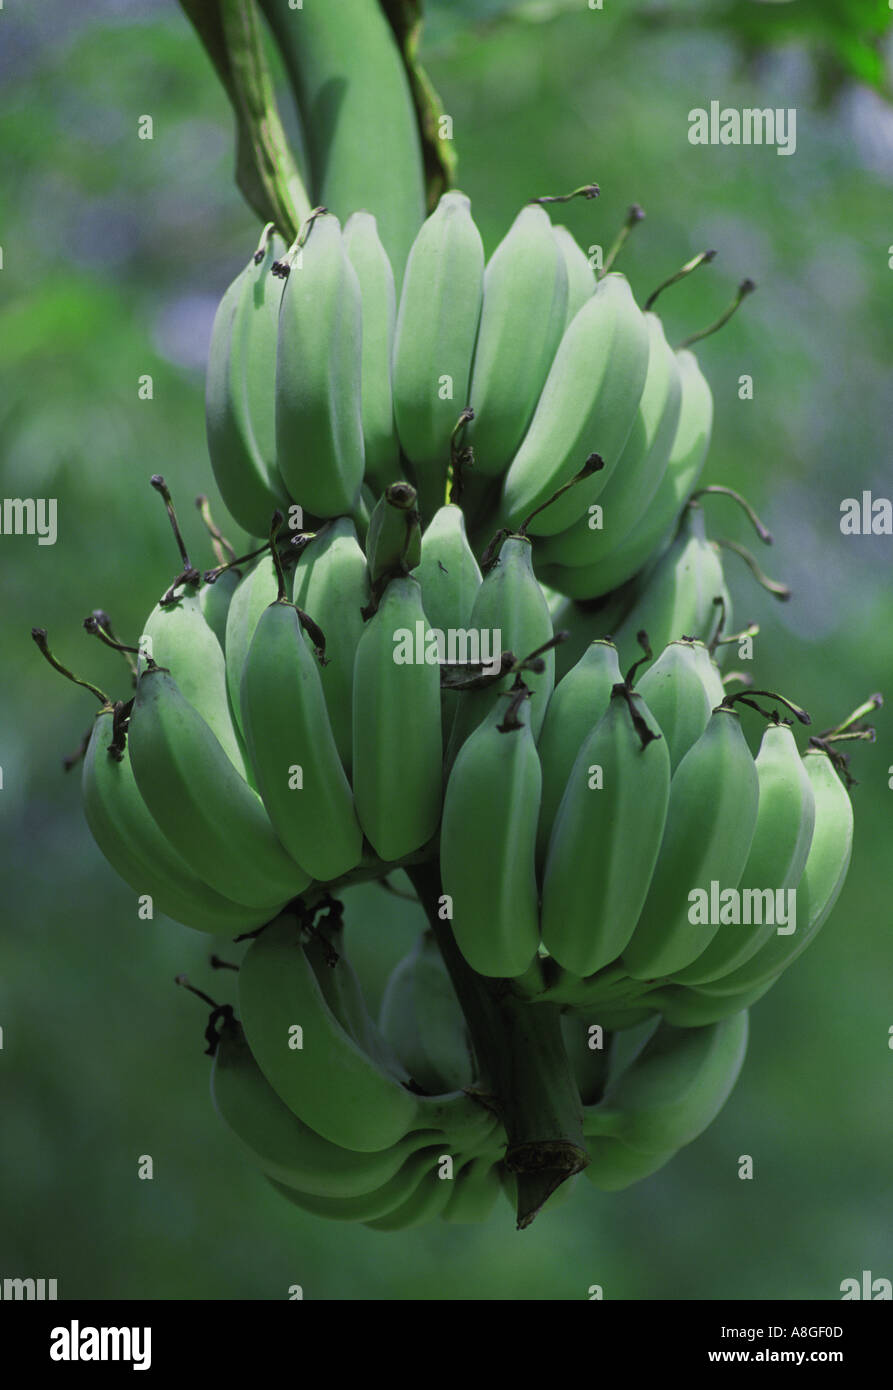 Cluster of green bananas Musa ornata Stock Photo